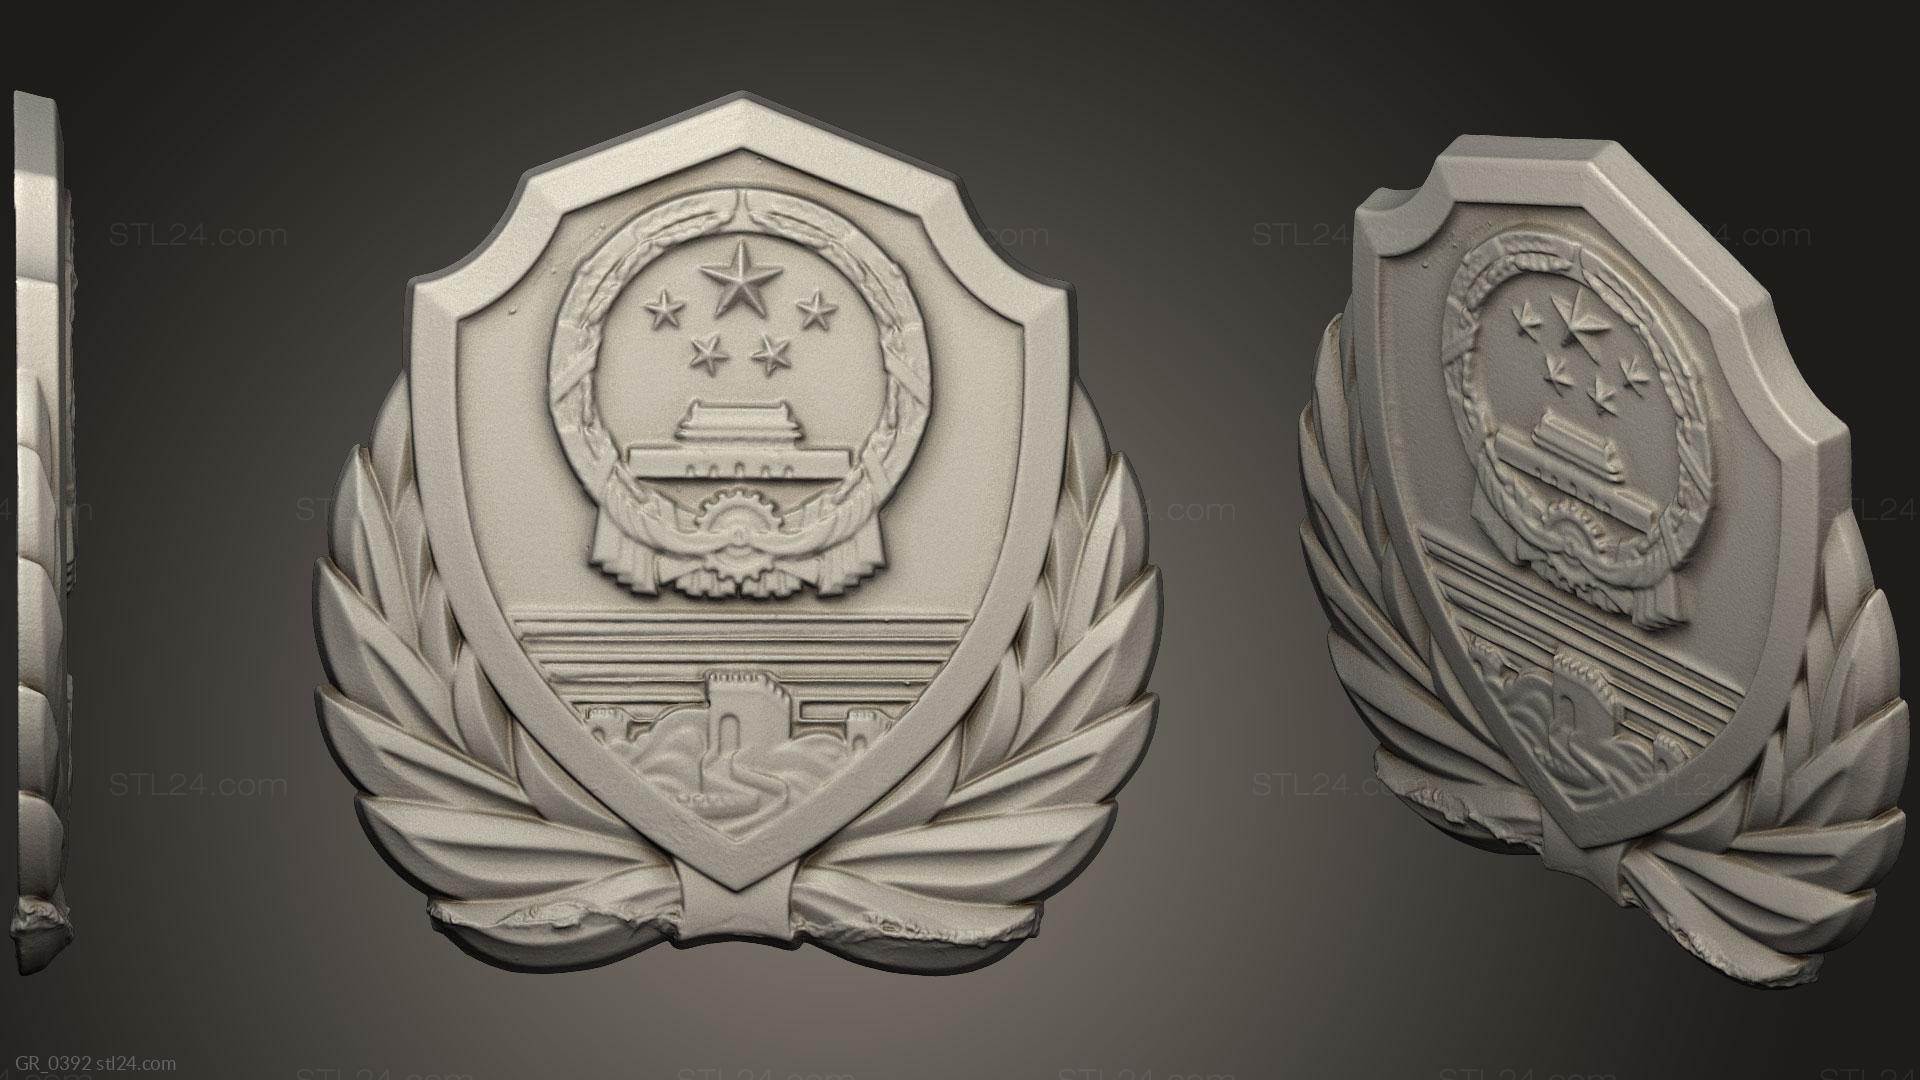 Гербы (Государственный герб, GR_0392) 3D модель для ЧПУ станка